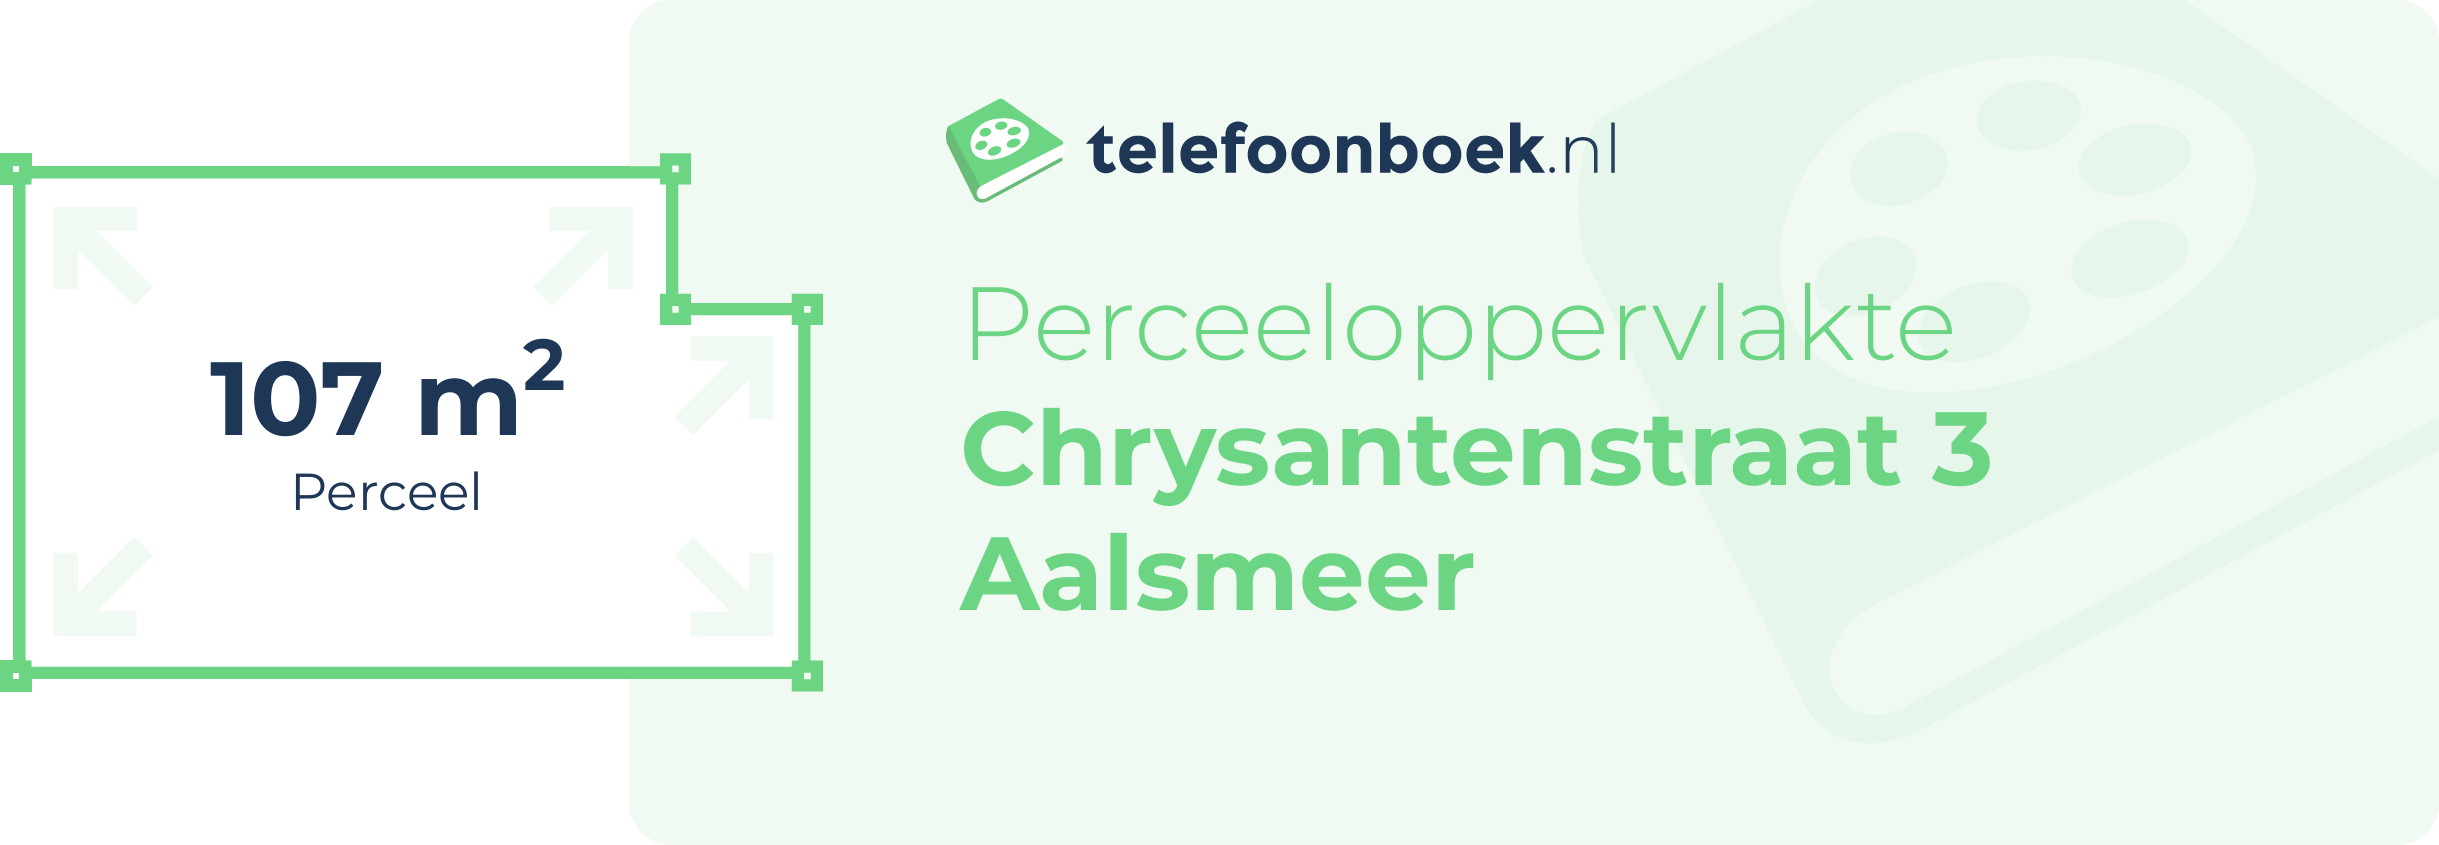 Perceeloppervlakte Chrysantenstraat 3 Aalsmeer